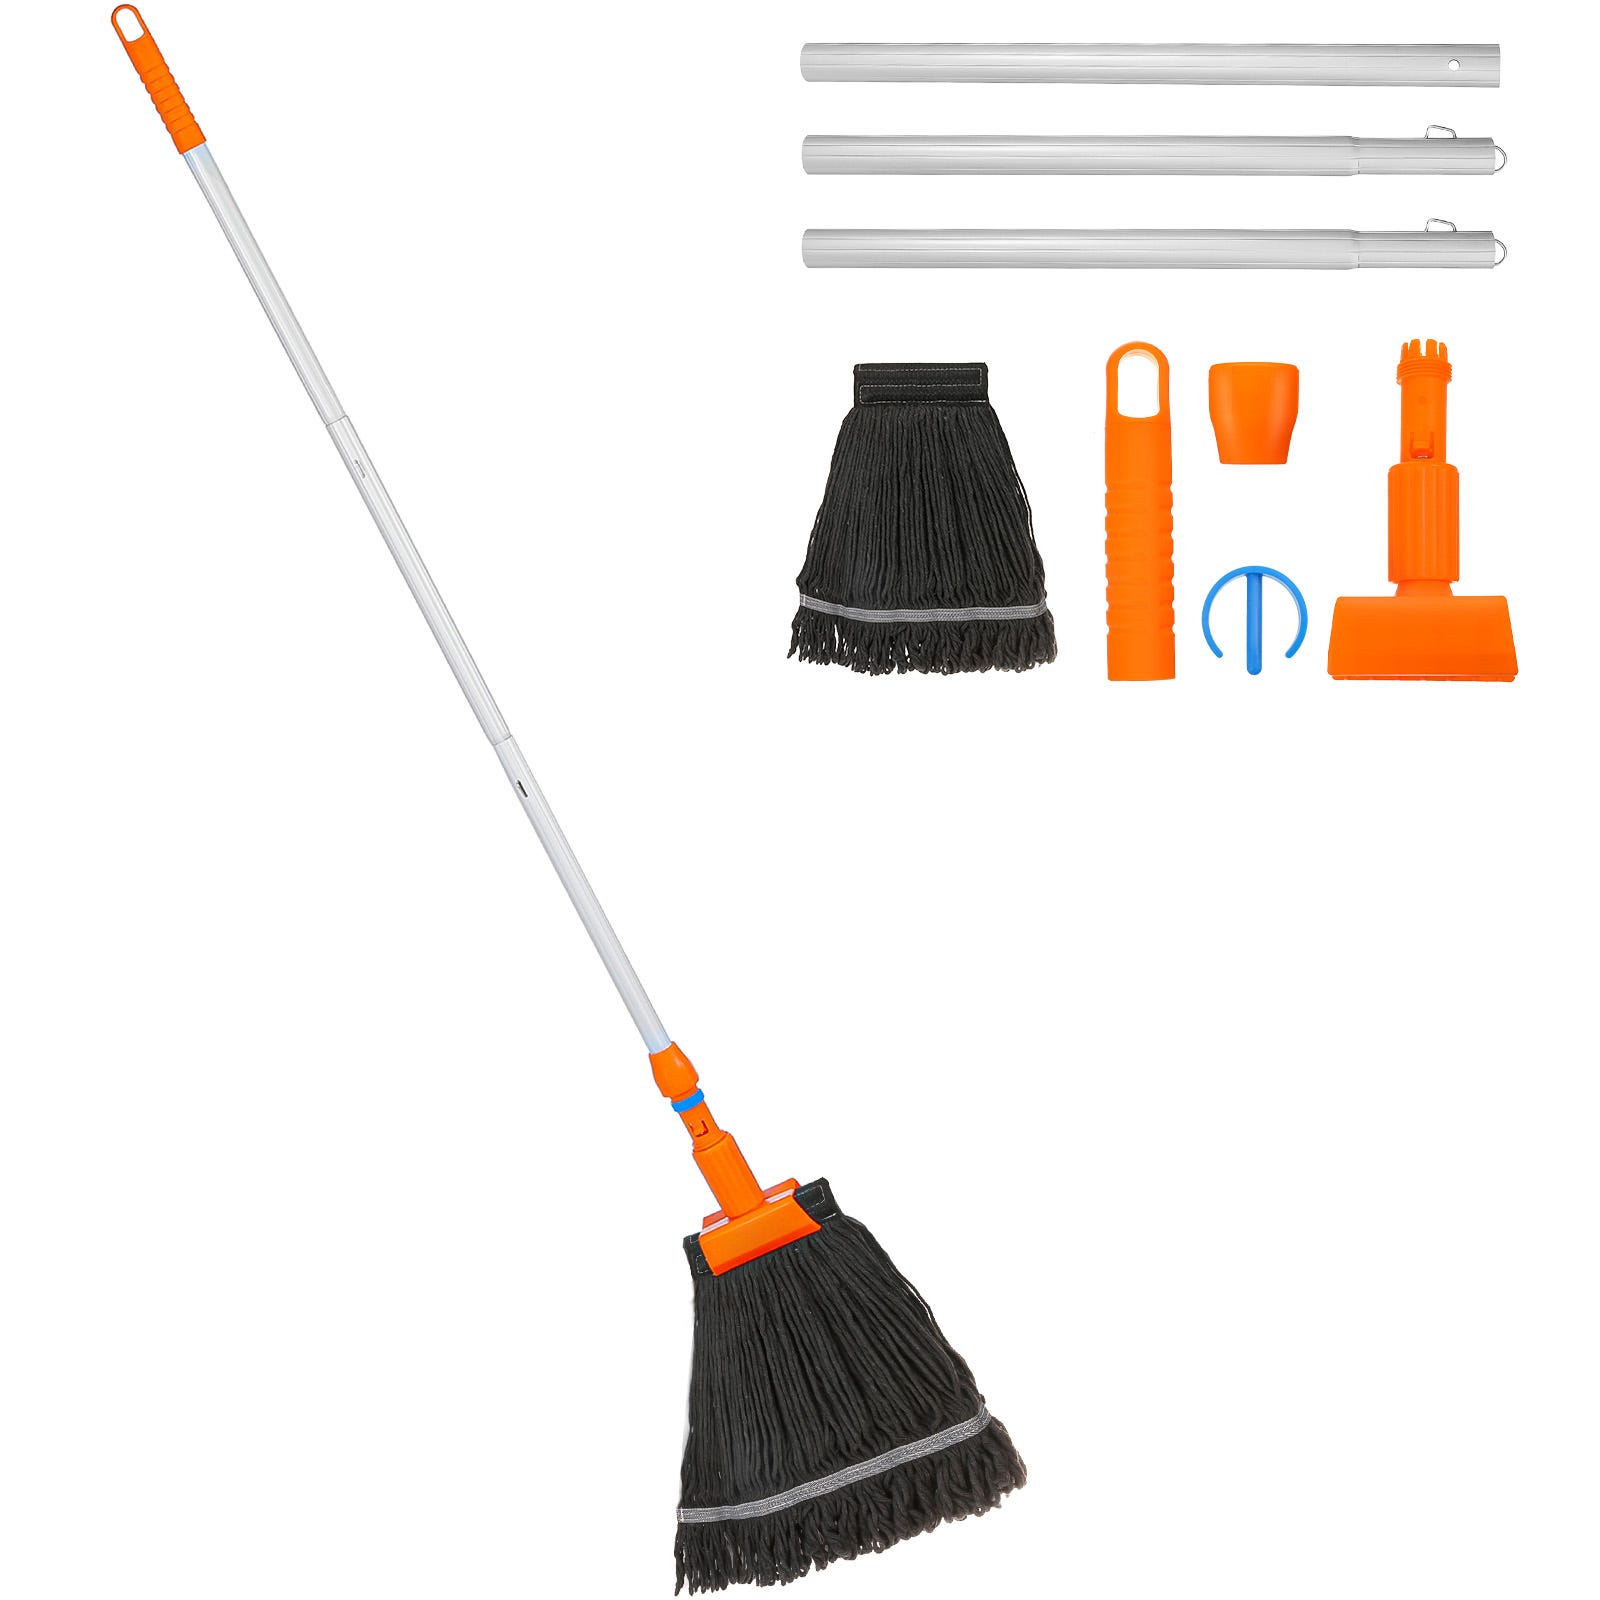 Balais simples - Des outils pratiques pour un nettoyage quotidien